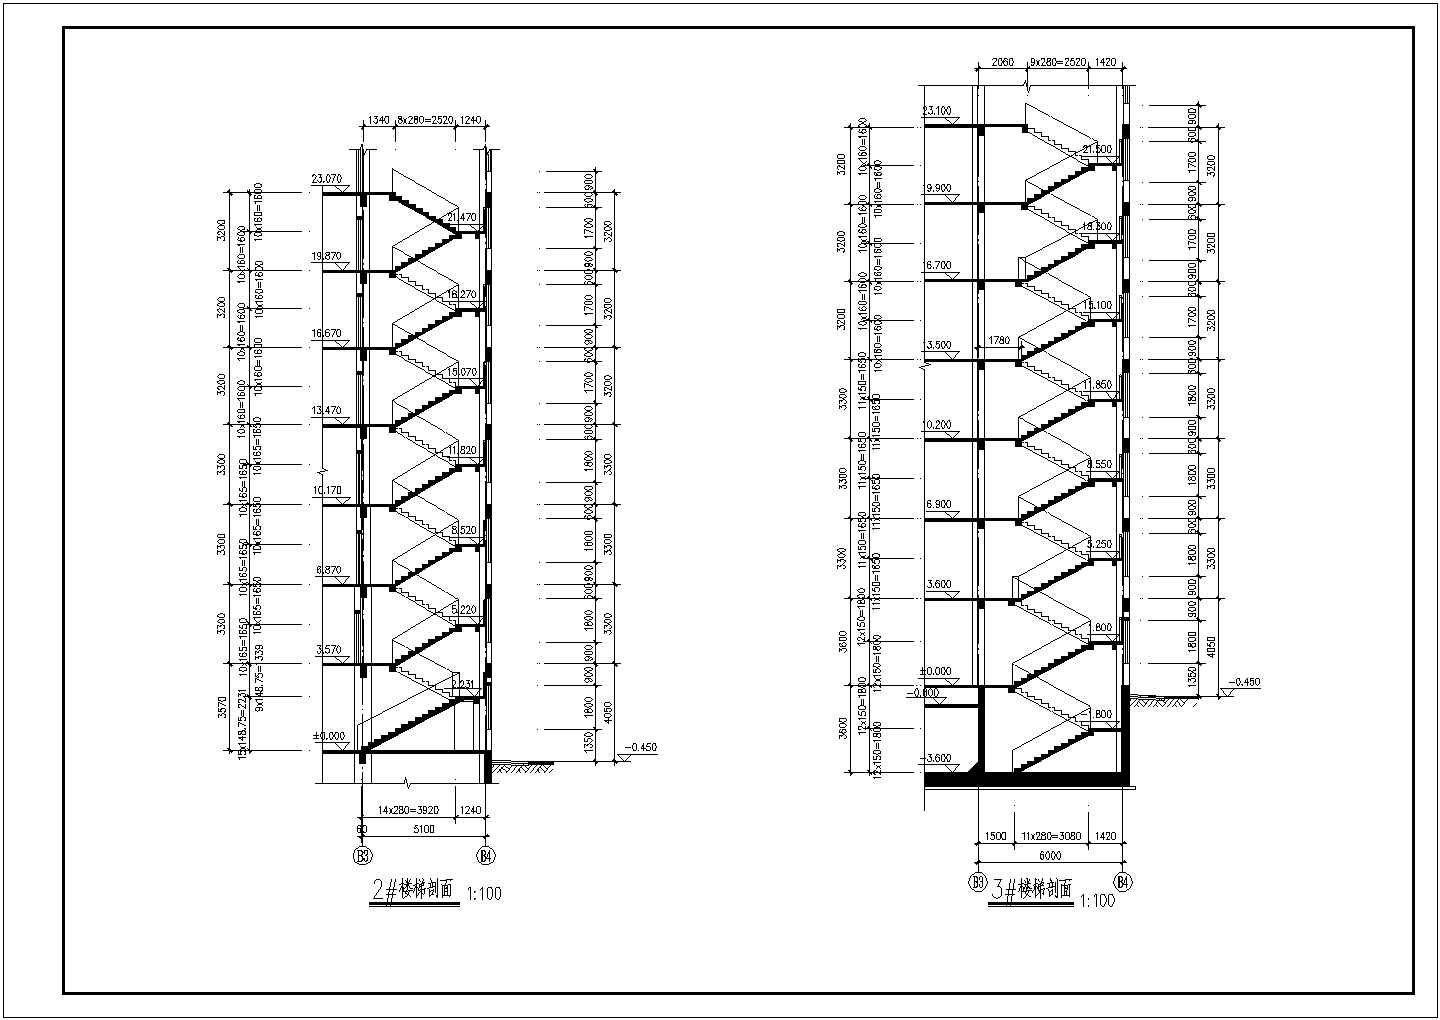 某旅社CAD框架结构设计详细施工图纸